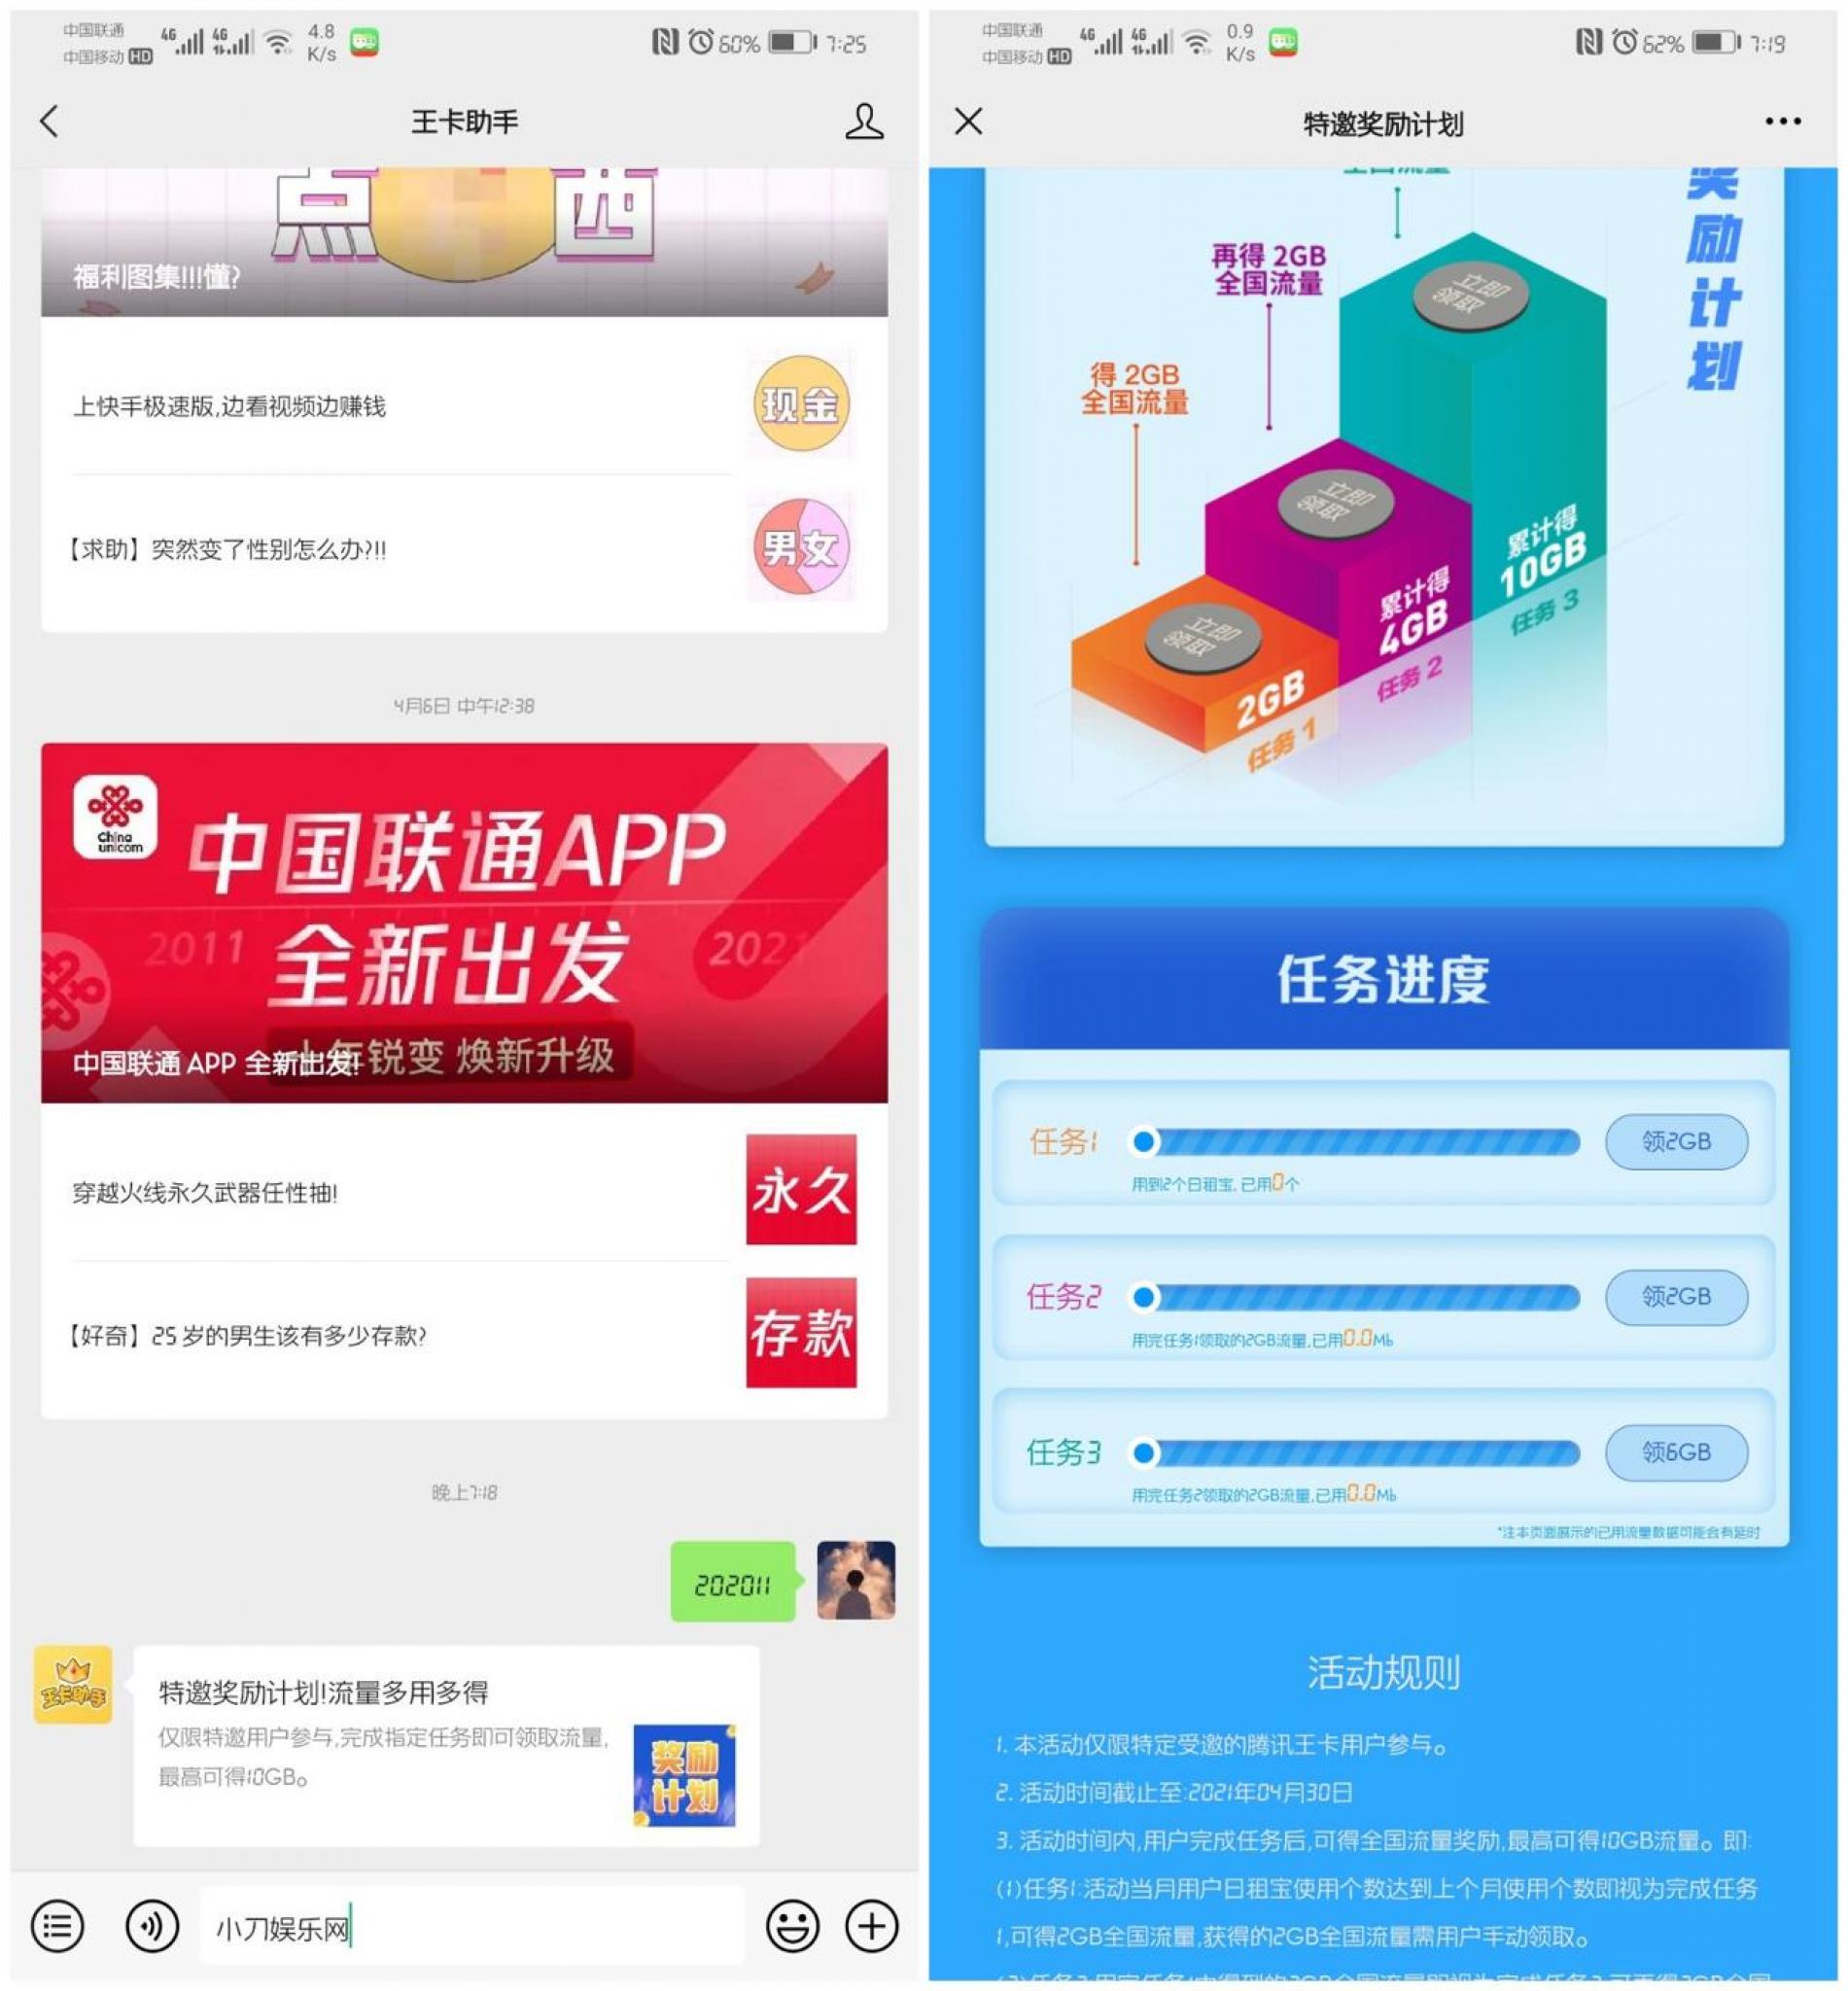 腾讯王卡特邀用户领10G流量插图